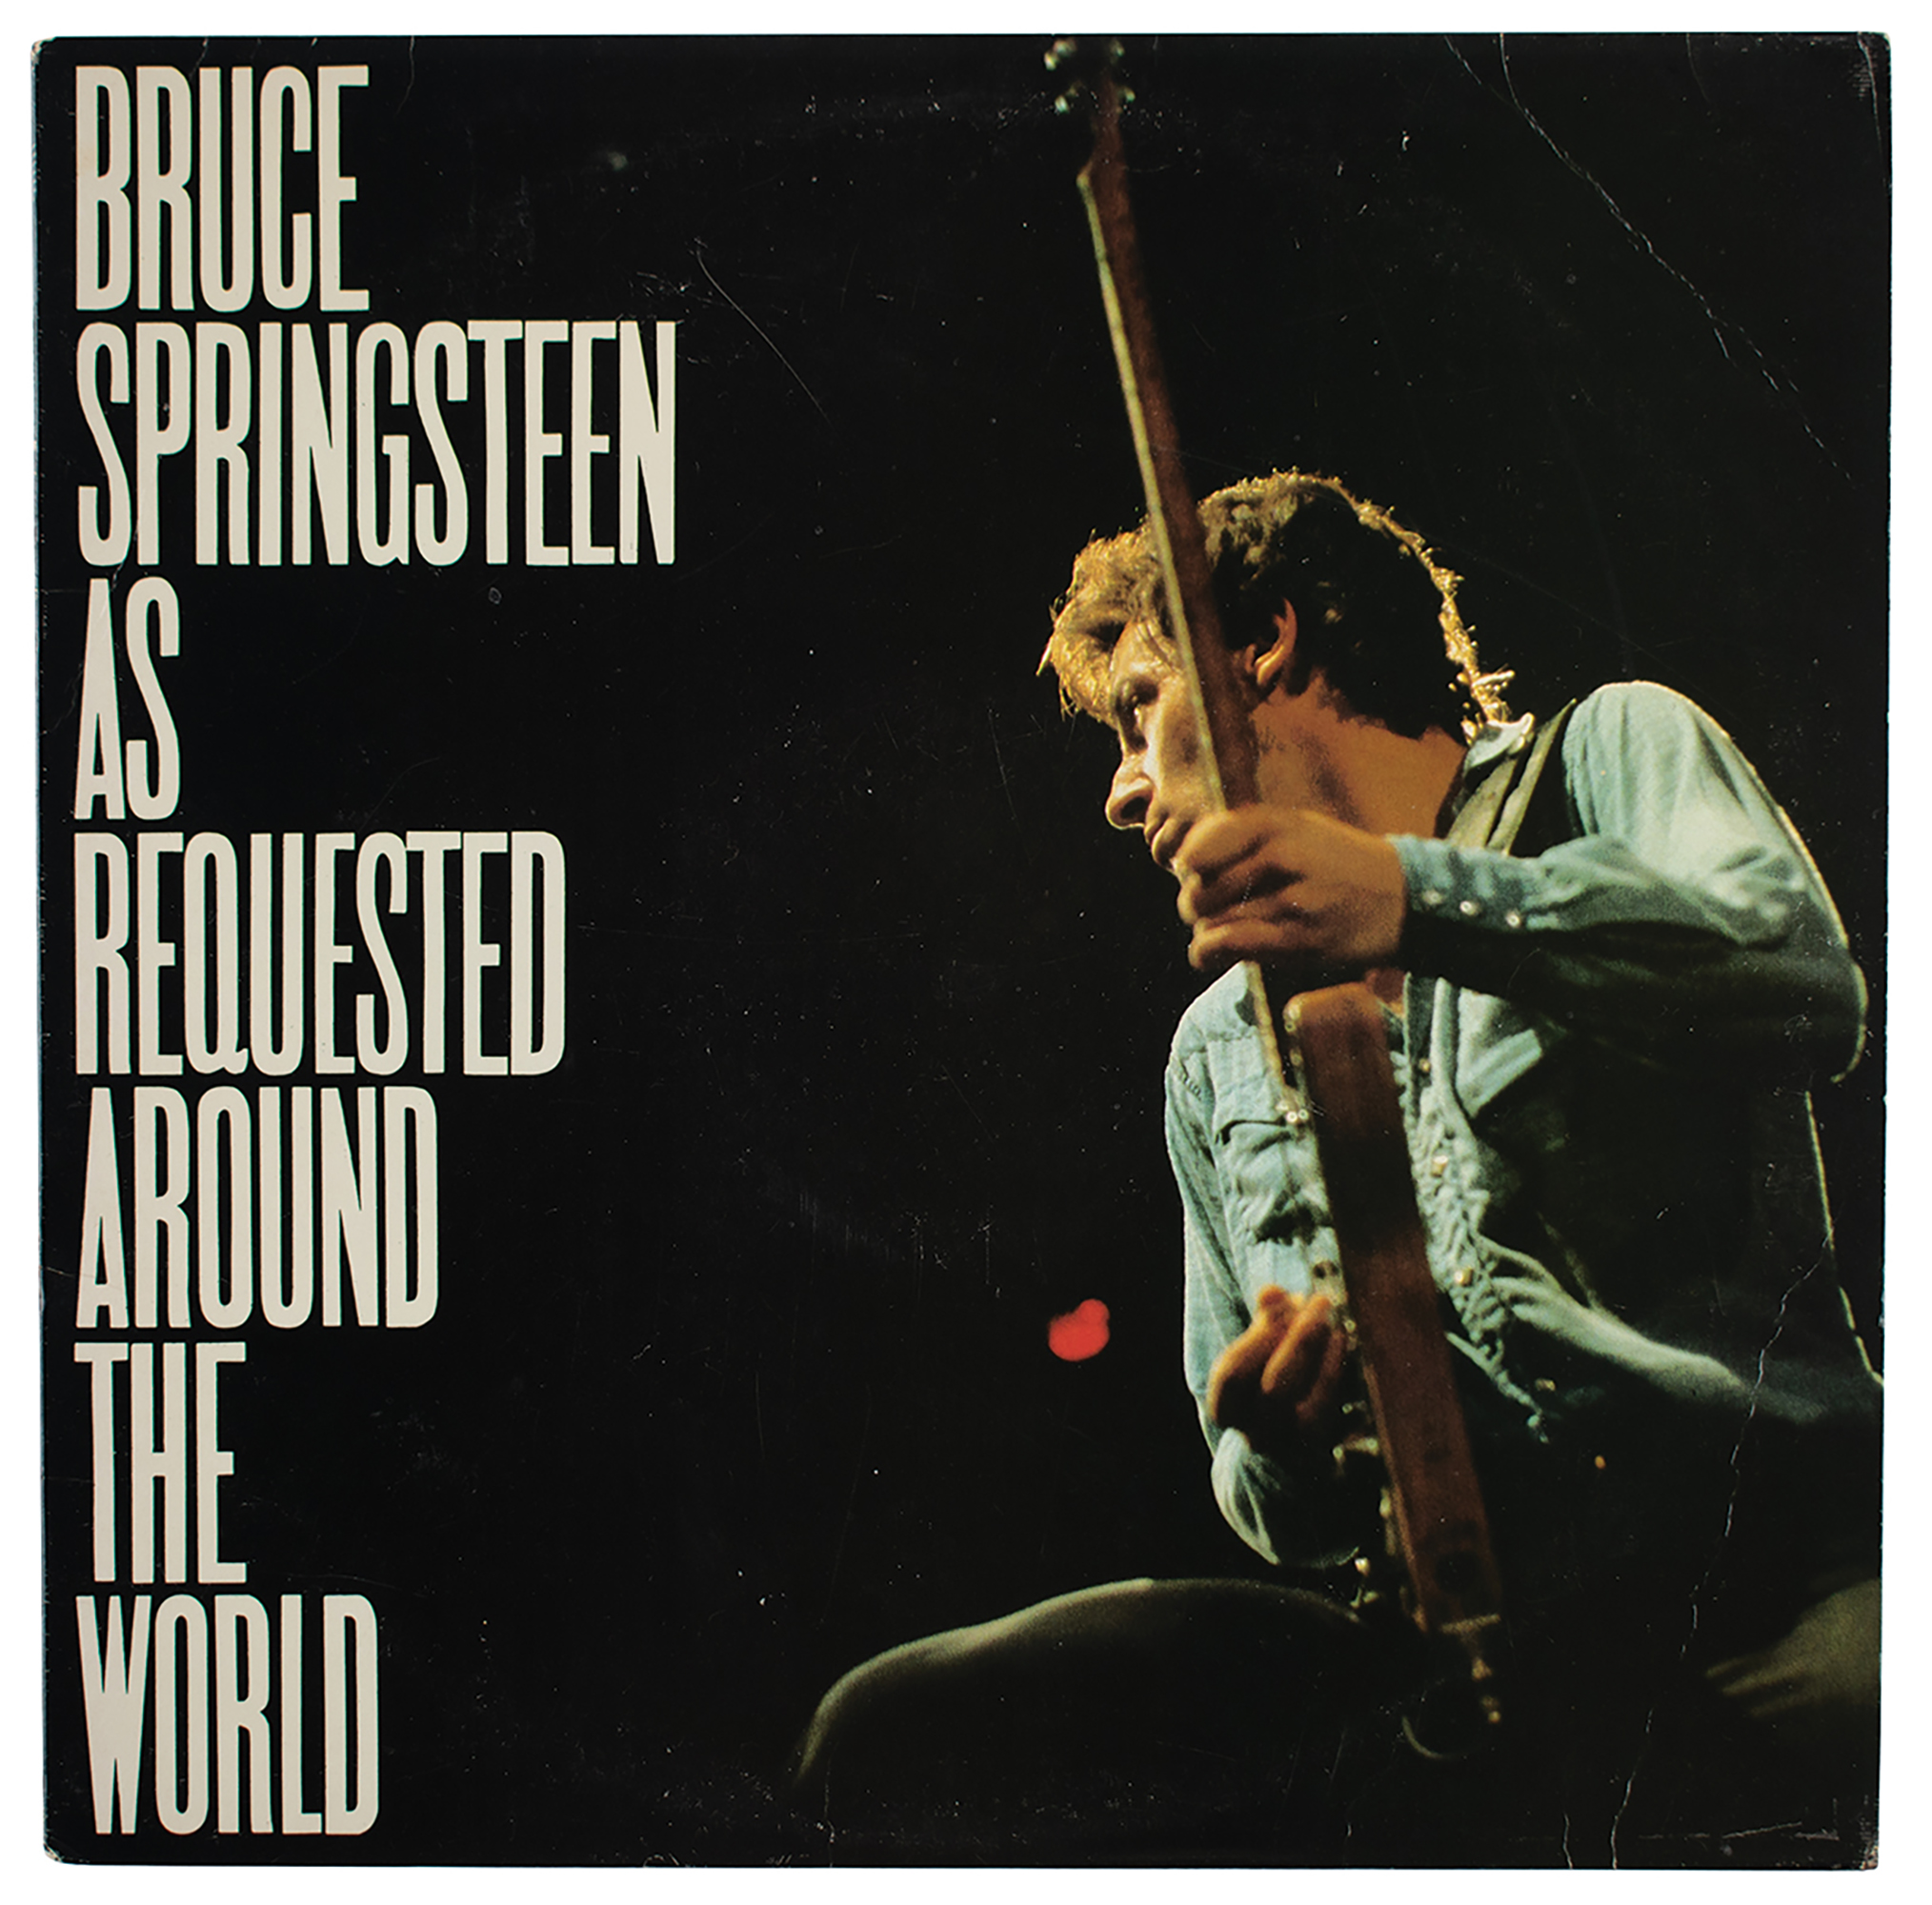 Lot #4441 Bruce Springsteen Signed Album - Image 3